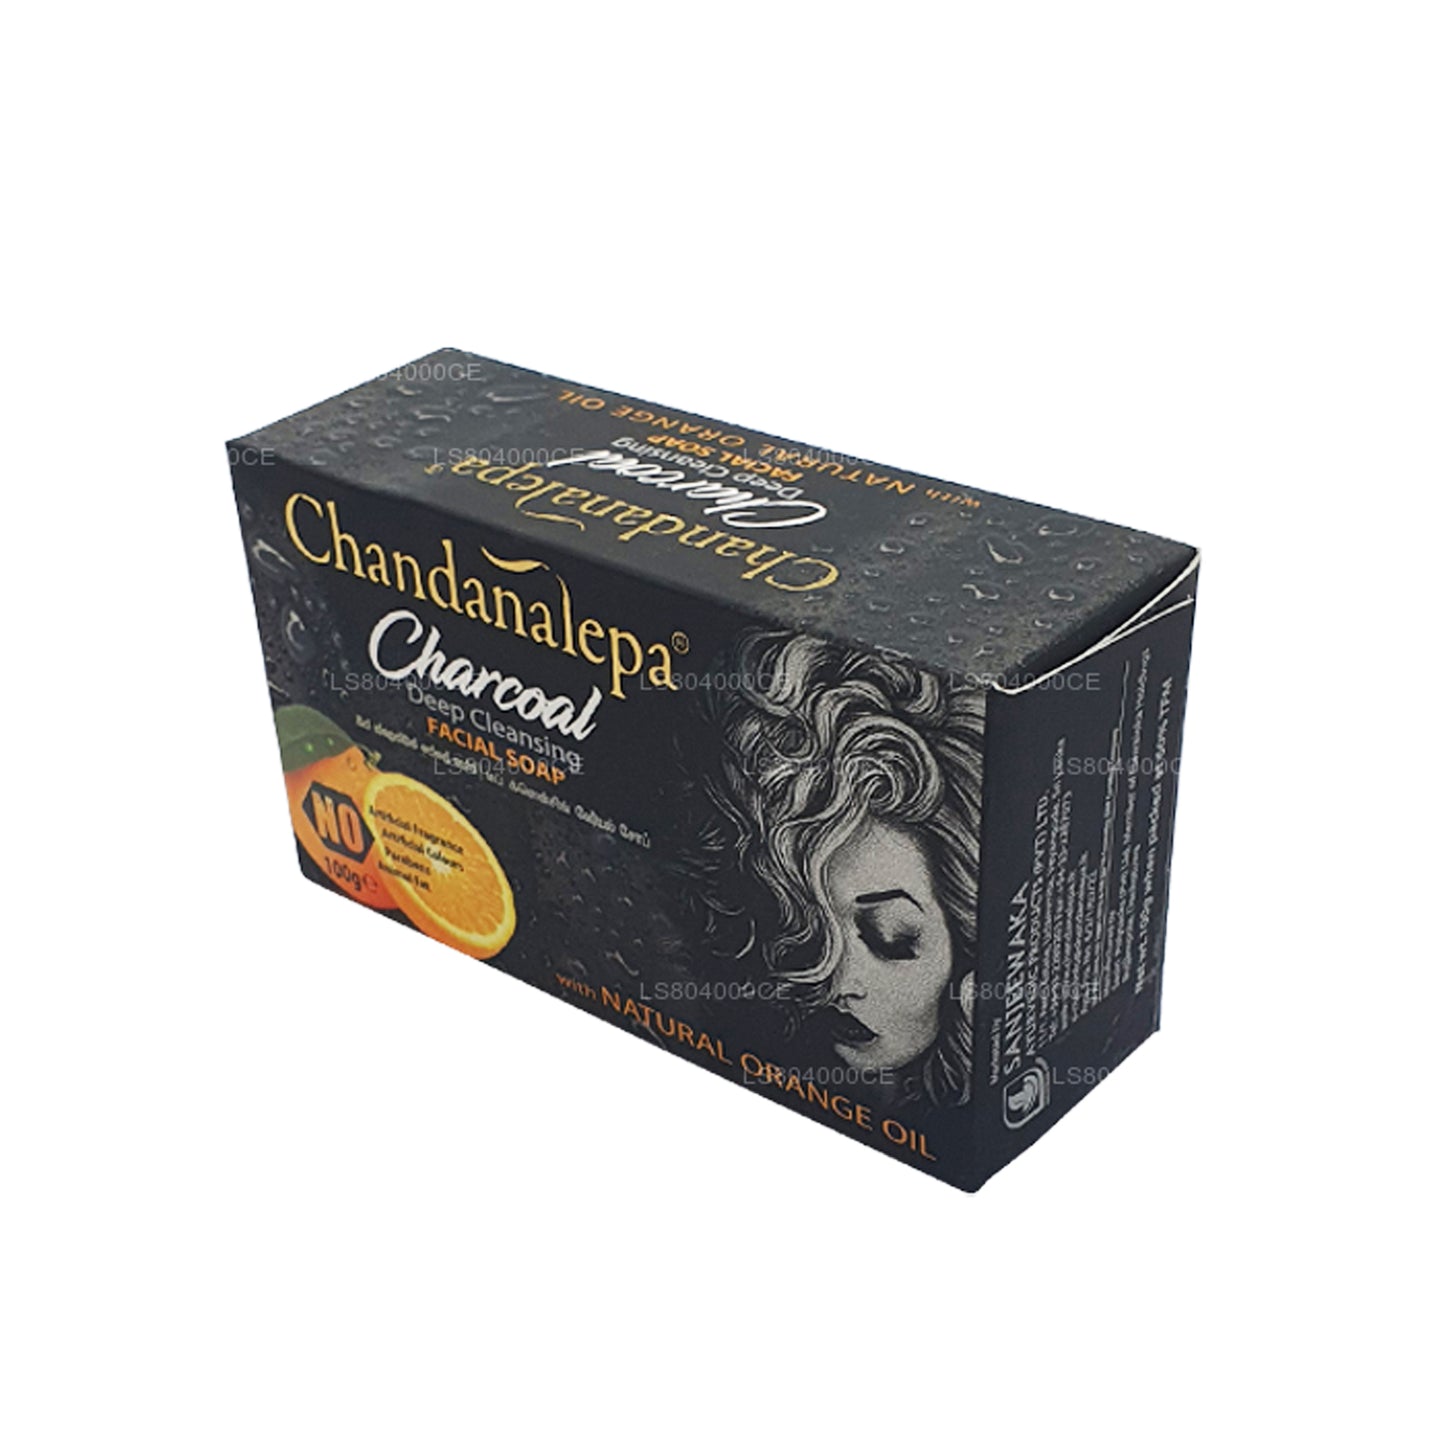 Chandanalepa Charcoal Głęboko oczyszczający baton (100g)